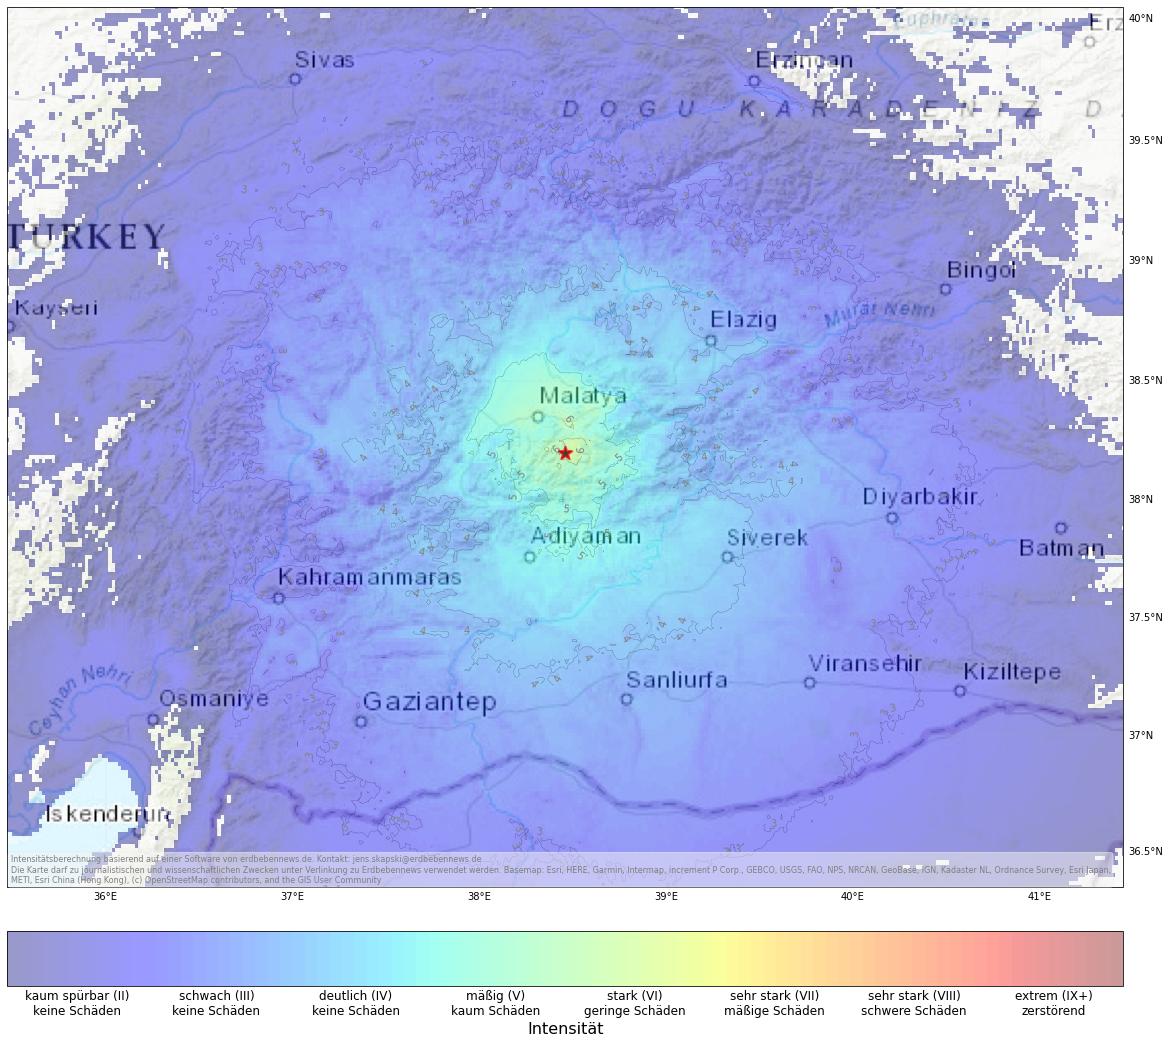 Berechnete Intensität (ShakeMap) des Erdbebens der Stärke 5.2 am 25. Januar, 14:04 Uhr in Türkei